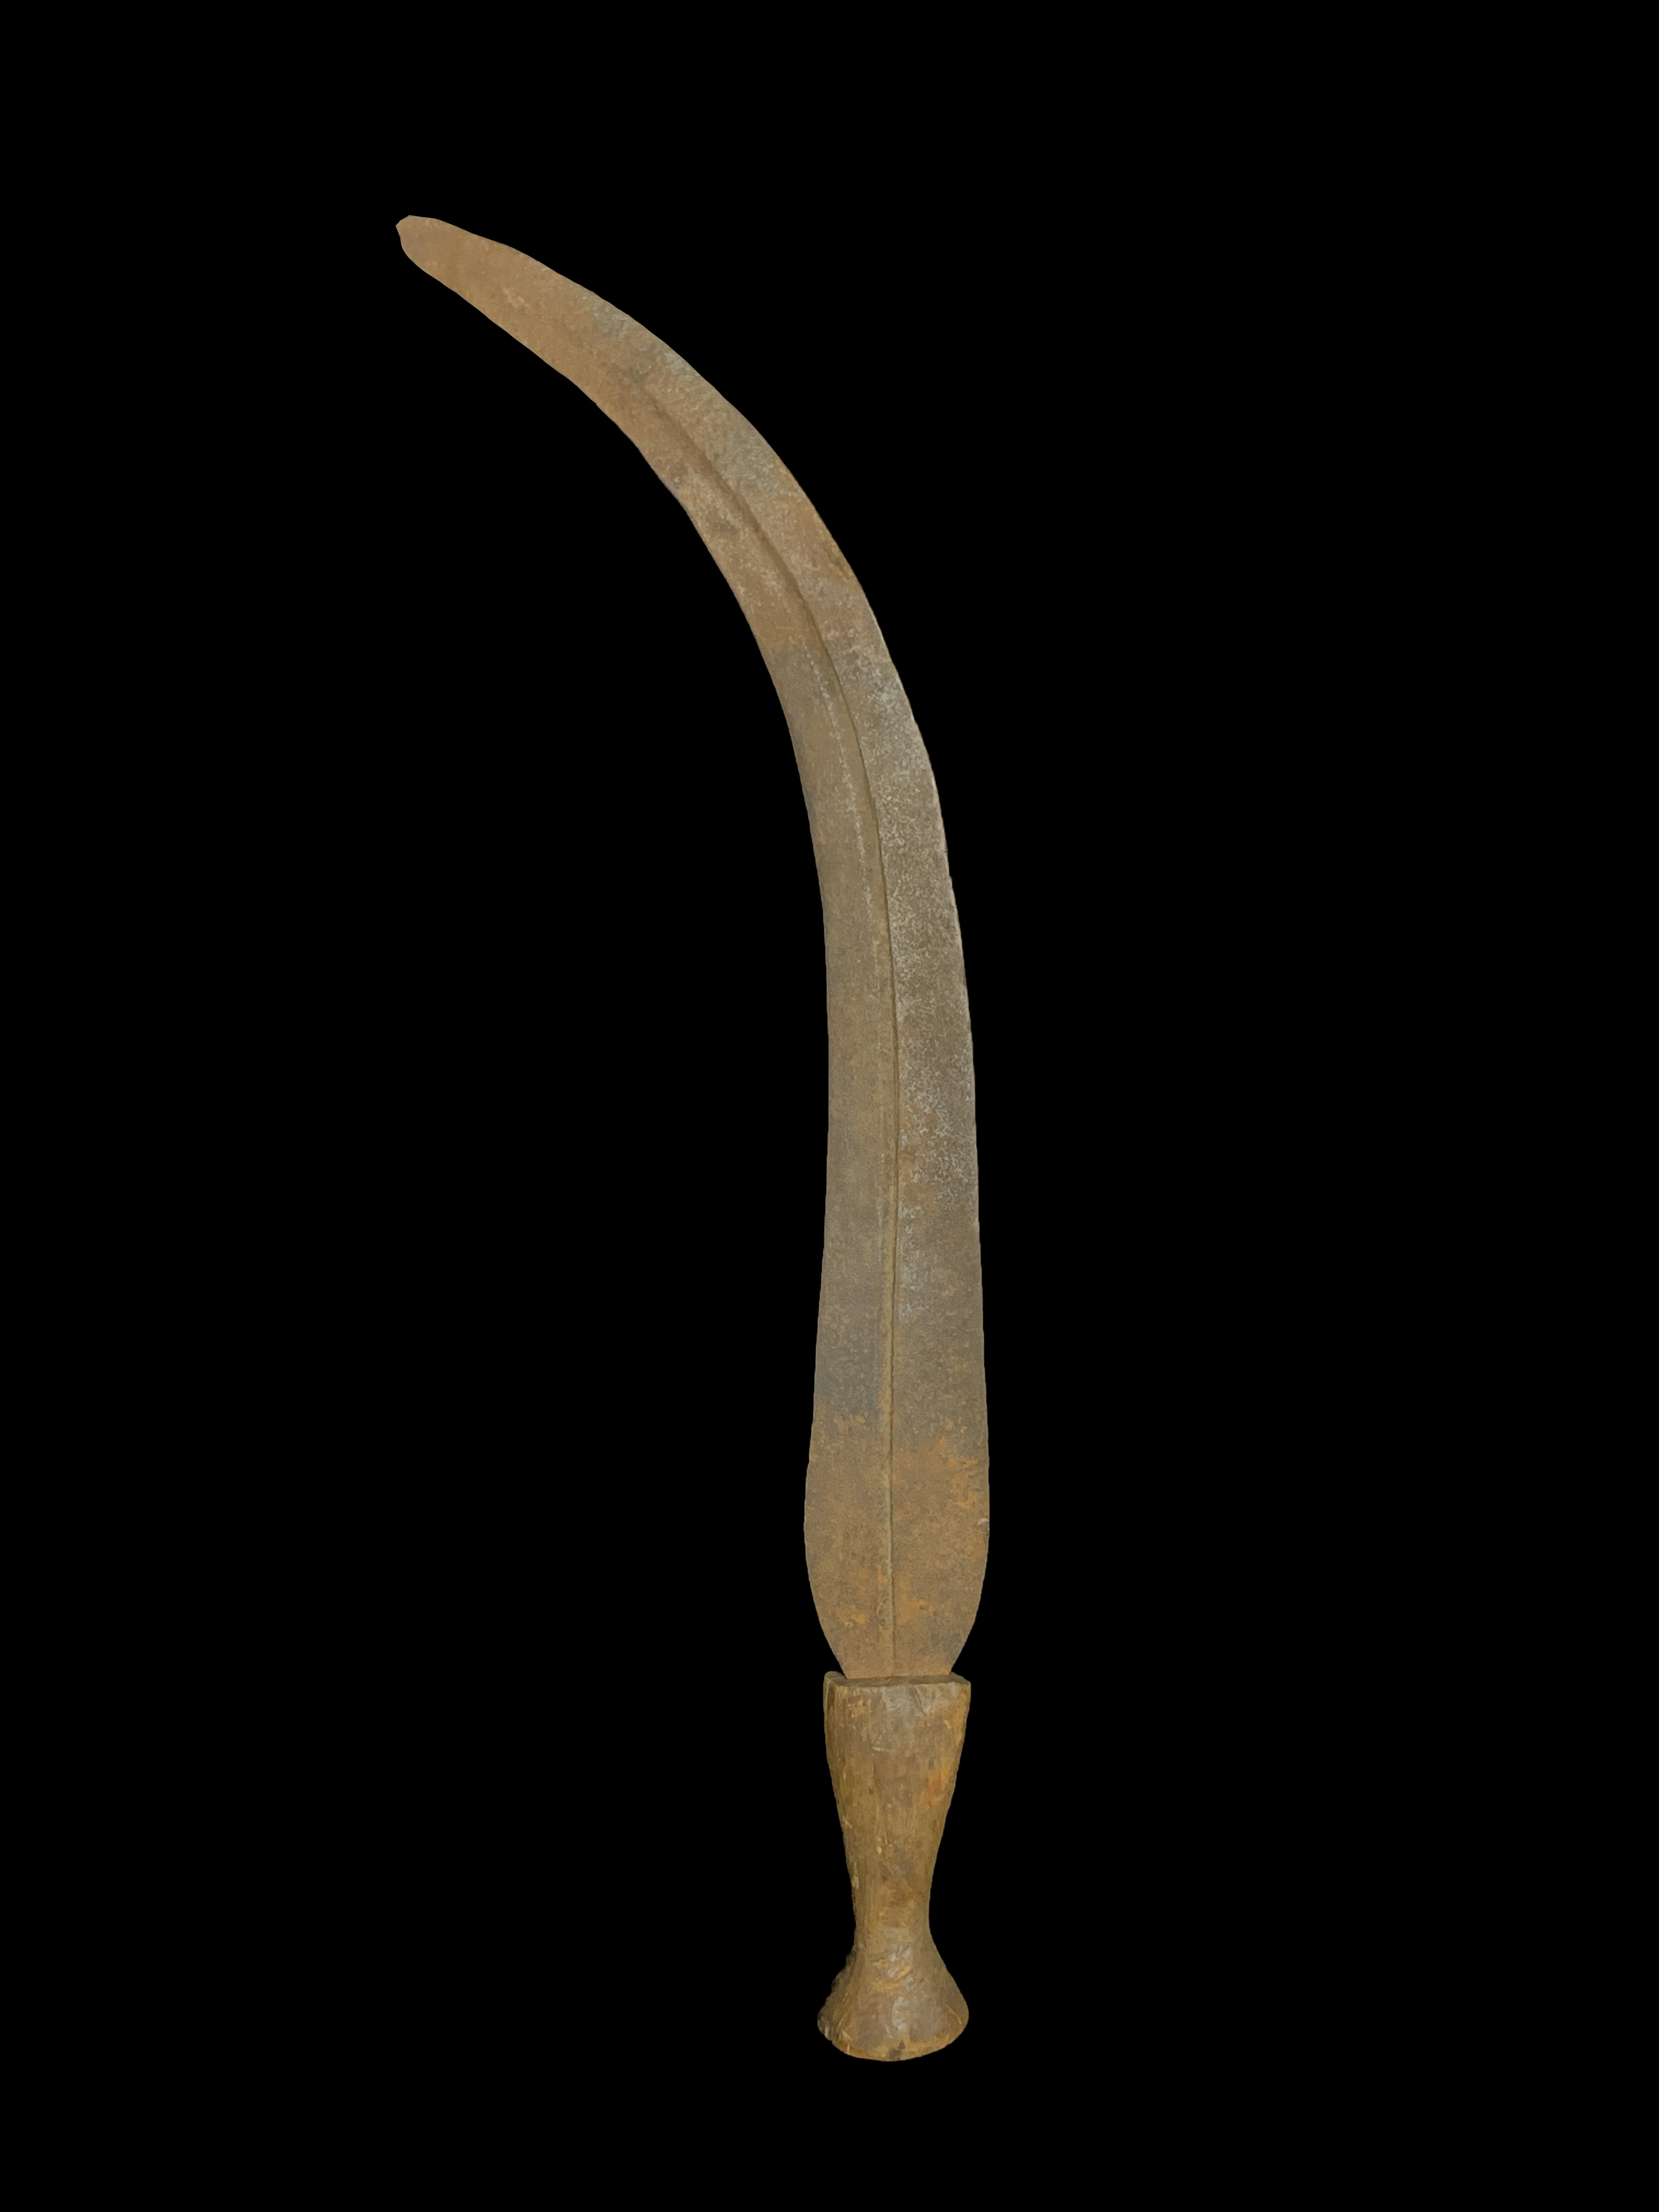 Wooden Handled Knife - Ngombe, Doko, Ngbandi People, northern D.R. Congo